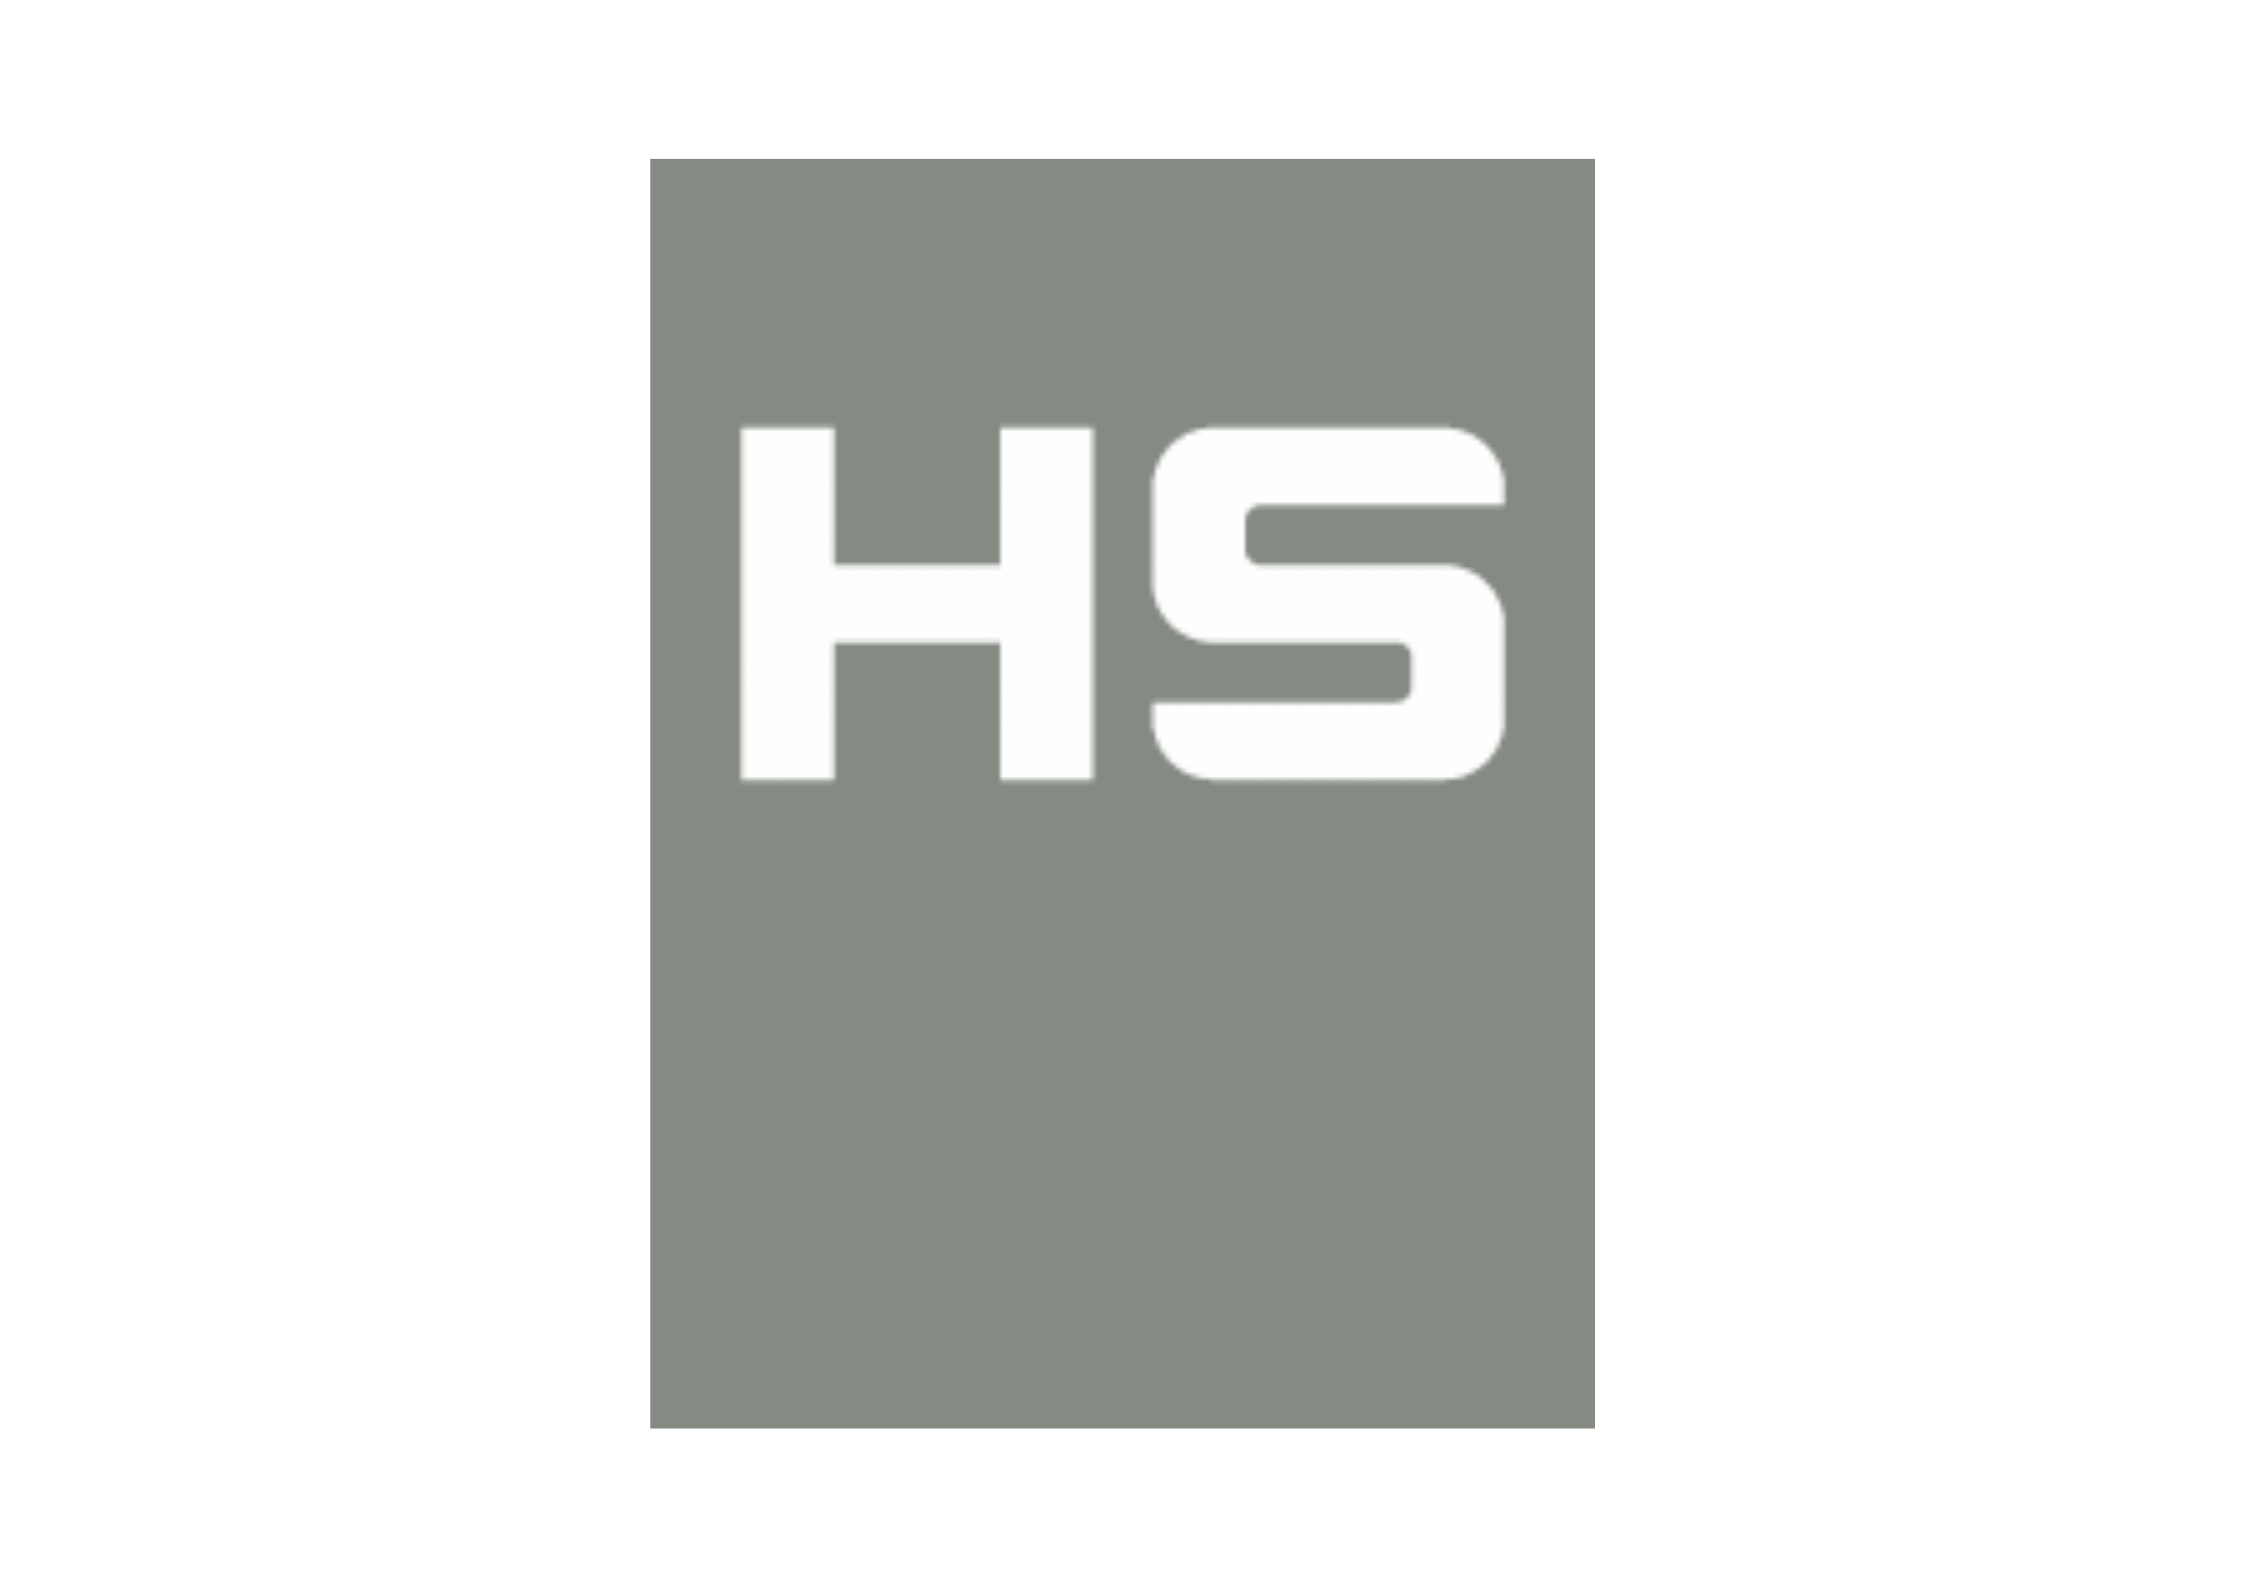 Logo HS